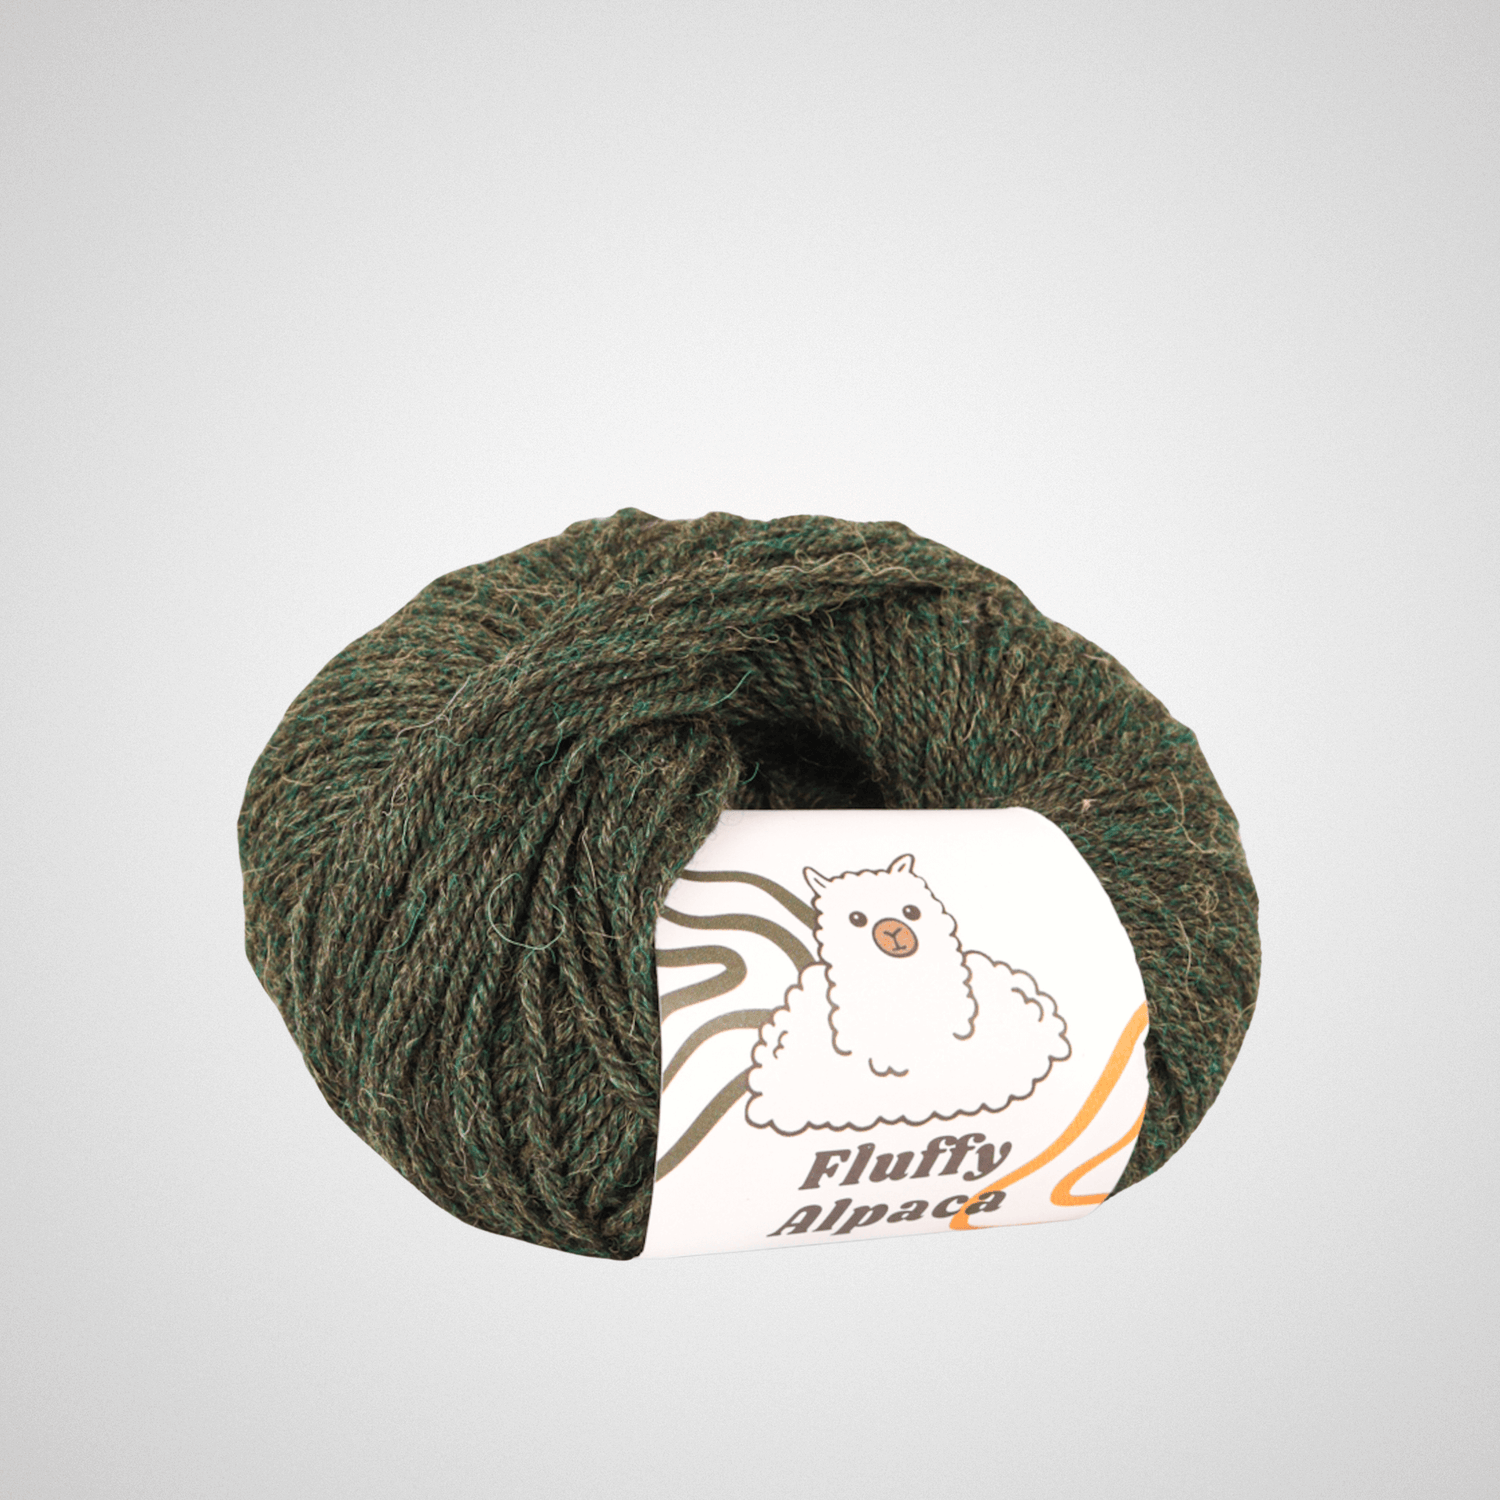 Fluffy Alpaca - Knitting yarn - 100% alpaca wool - Forest green